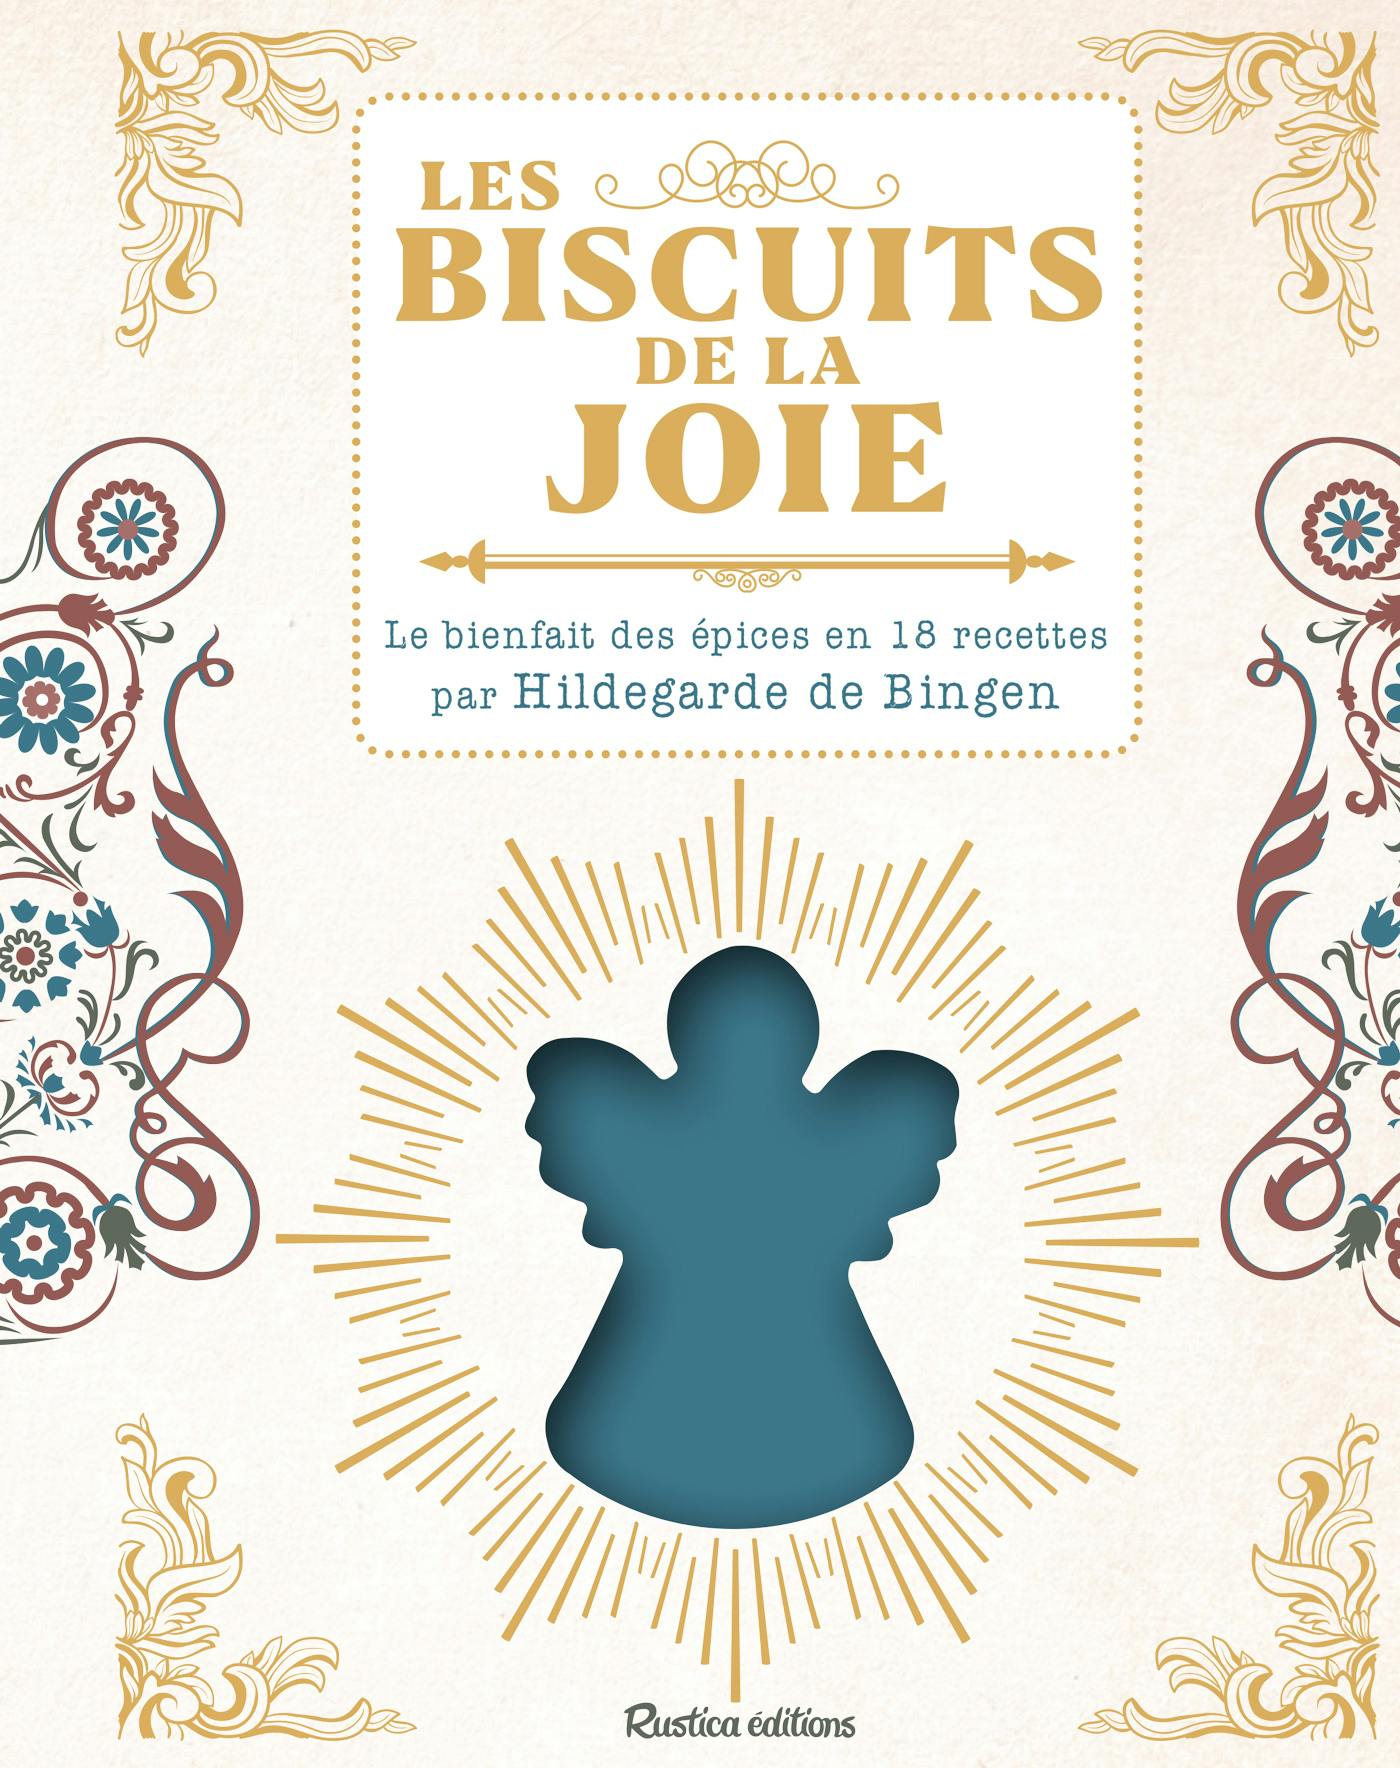 Les biscuits de la joie : Le bienfait des épices en 18 recettes par Hildegarde de Bingen | Sophie Macheteau